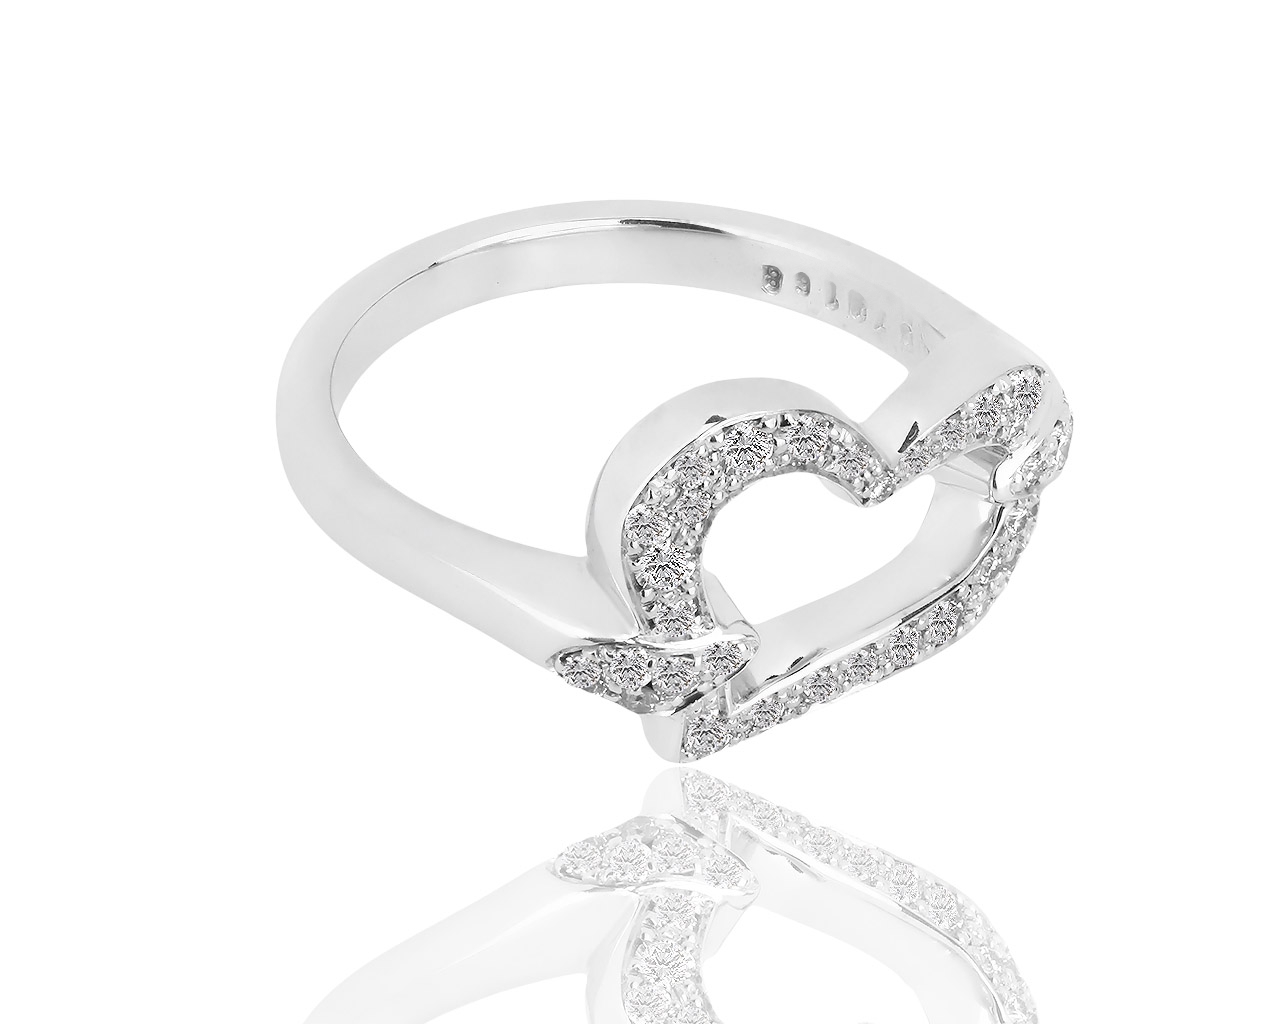 Прекрасное золотое кольцо с бриллиантами 0.31ct Piaget Heart